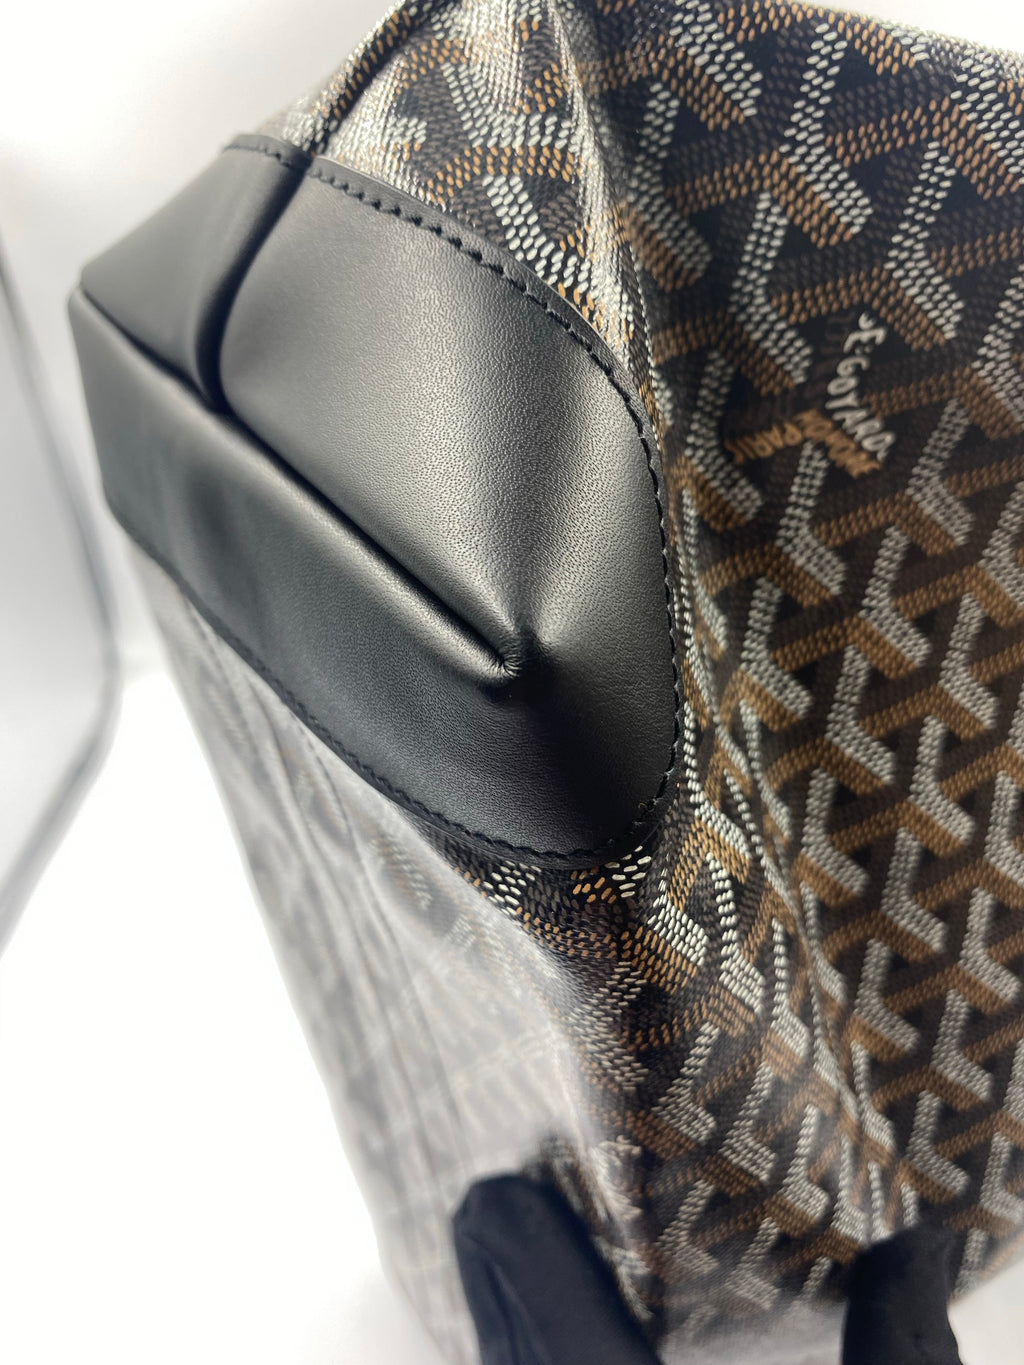 Goyard Tote Bag PM Size in Grey Color